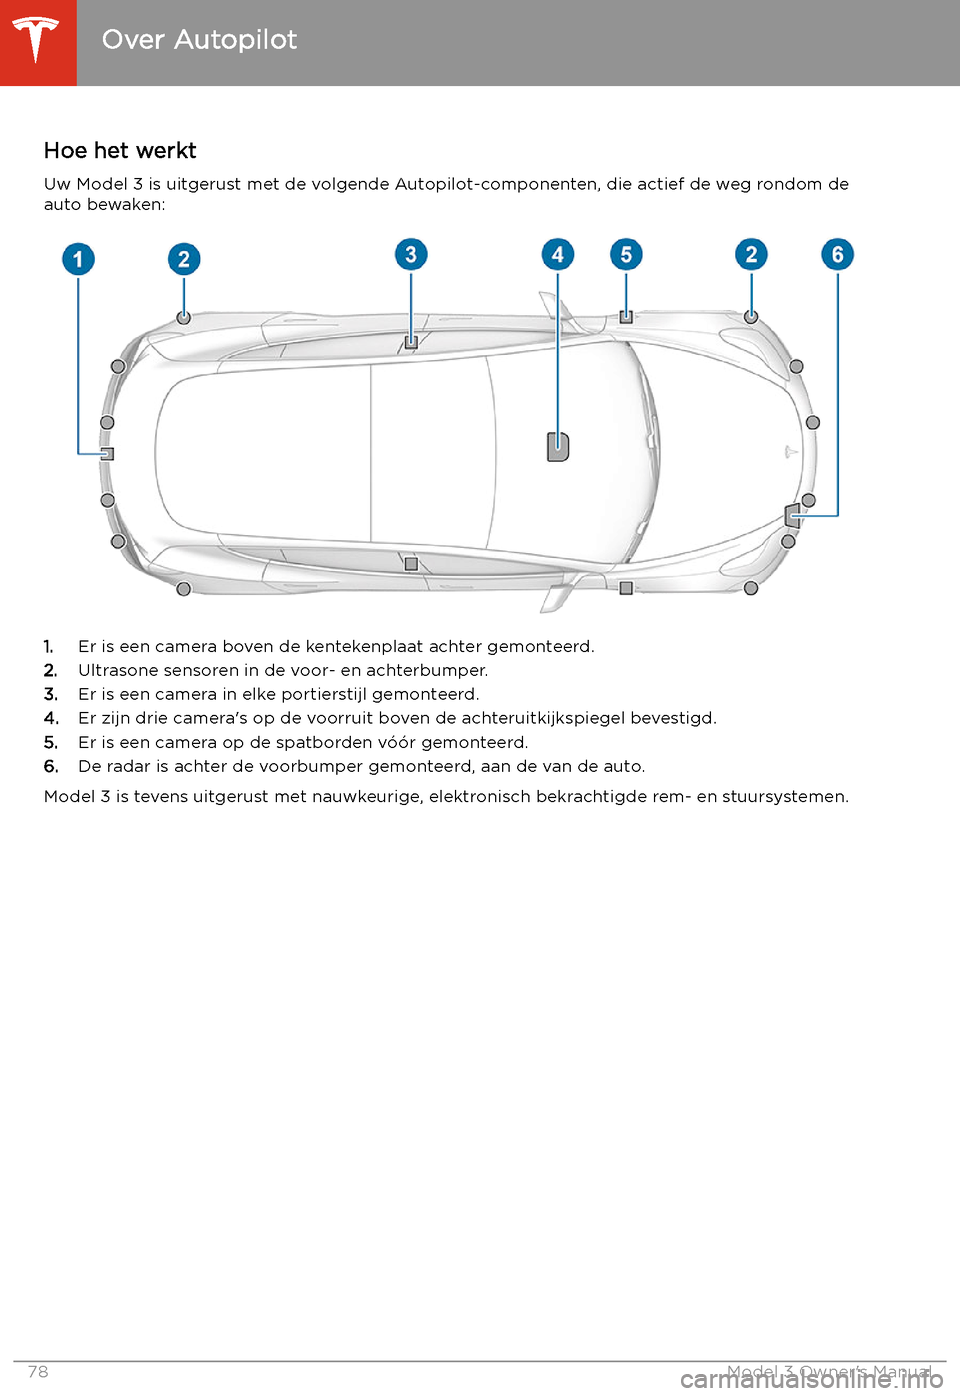 TESLA MODEL 3 2019  Handleiding (in Dutch) Autopilot
Over Autopilot
Hoe het werkt
Uw Model 3 is uitgerust met de volgende Autopilot-componenten, die actief de weg rondom de auto bewaken:
1. Er is een camera boven de kentekenplaat achter gemont